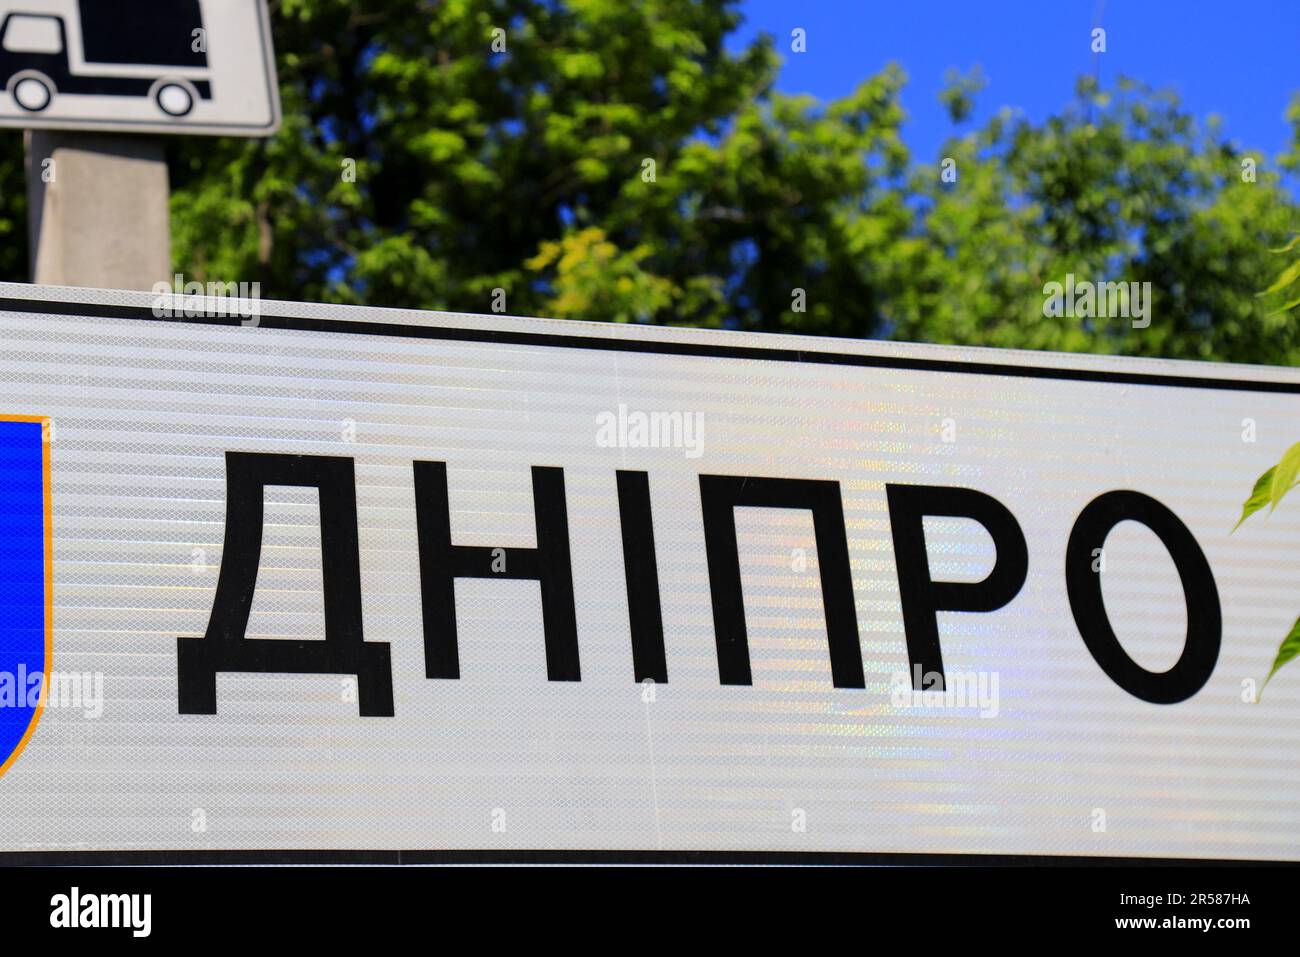 Panneau à l'entrée avec inscription en ukrainien - Dnipro. Dnepr City Sign, Ukraine Banque D'Images